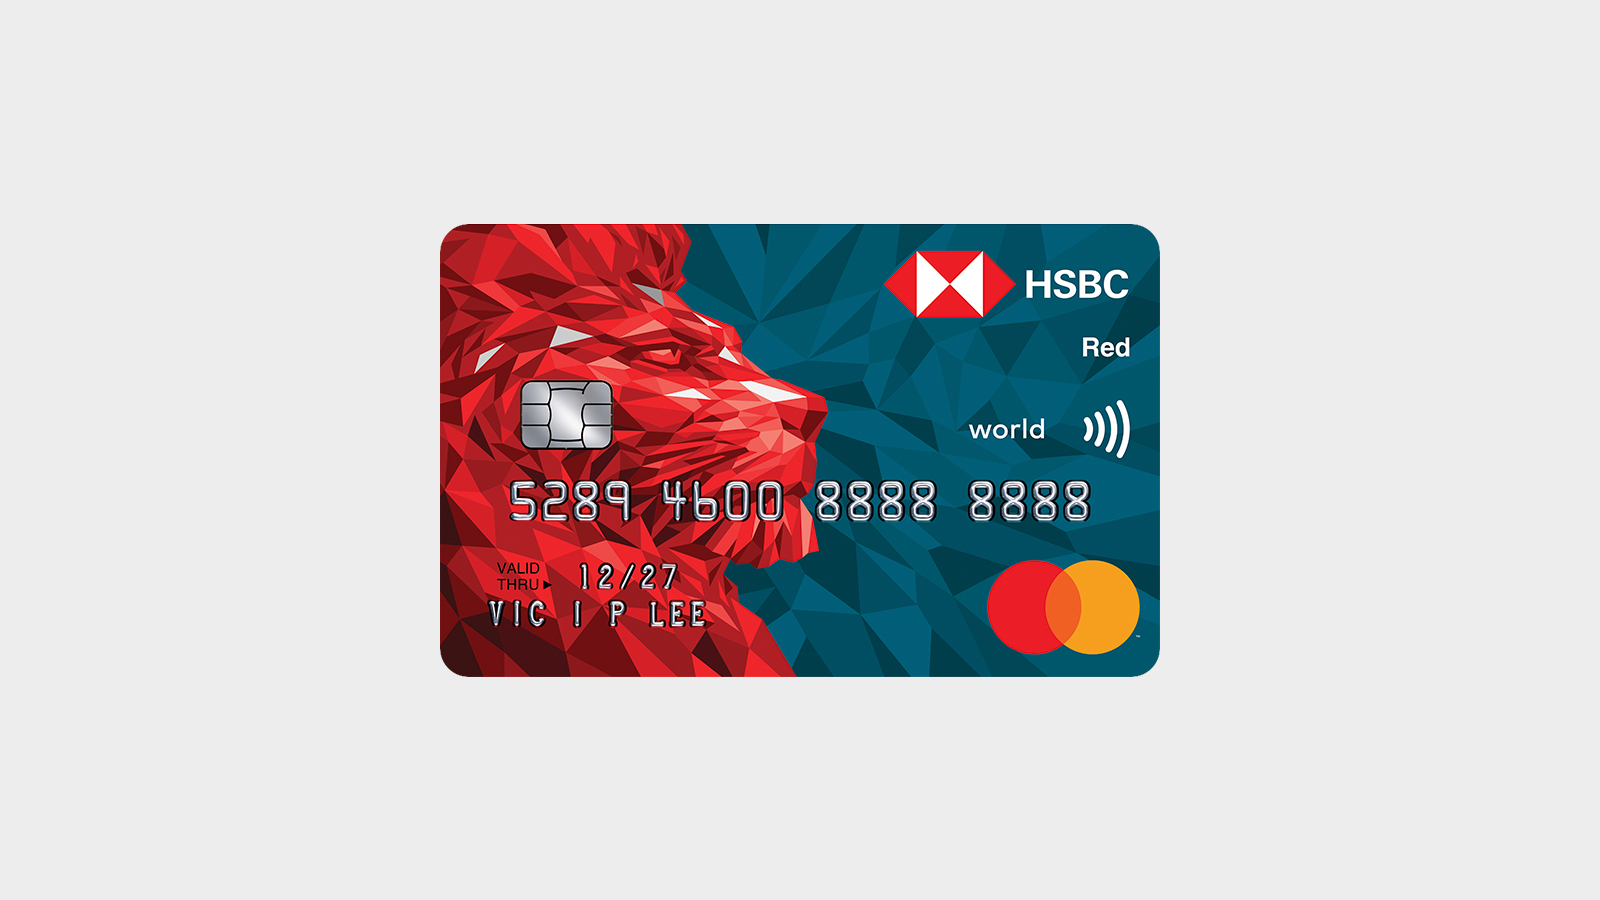 網上申請信用卡| 盡享信用卡優惠及迎新禮品- 香港滙豐